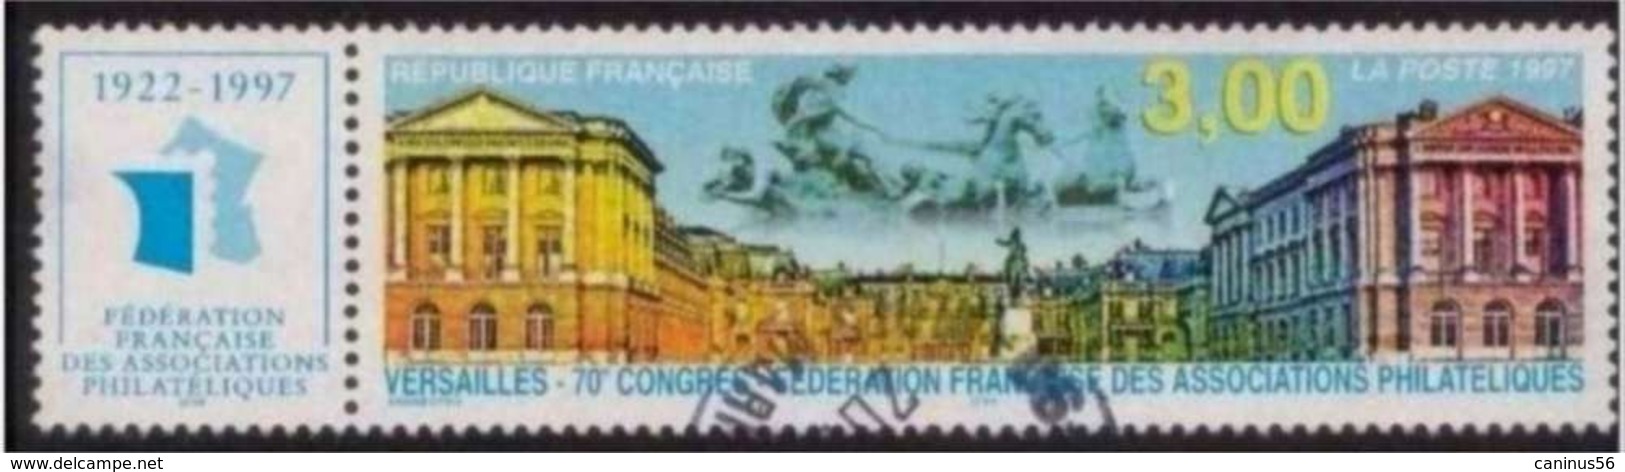 1997 Yt 3073 (o) Versailles Fédération Française Des Associations Philatéliques - Oblitérés